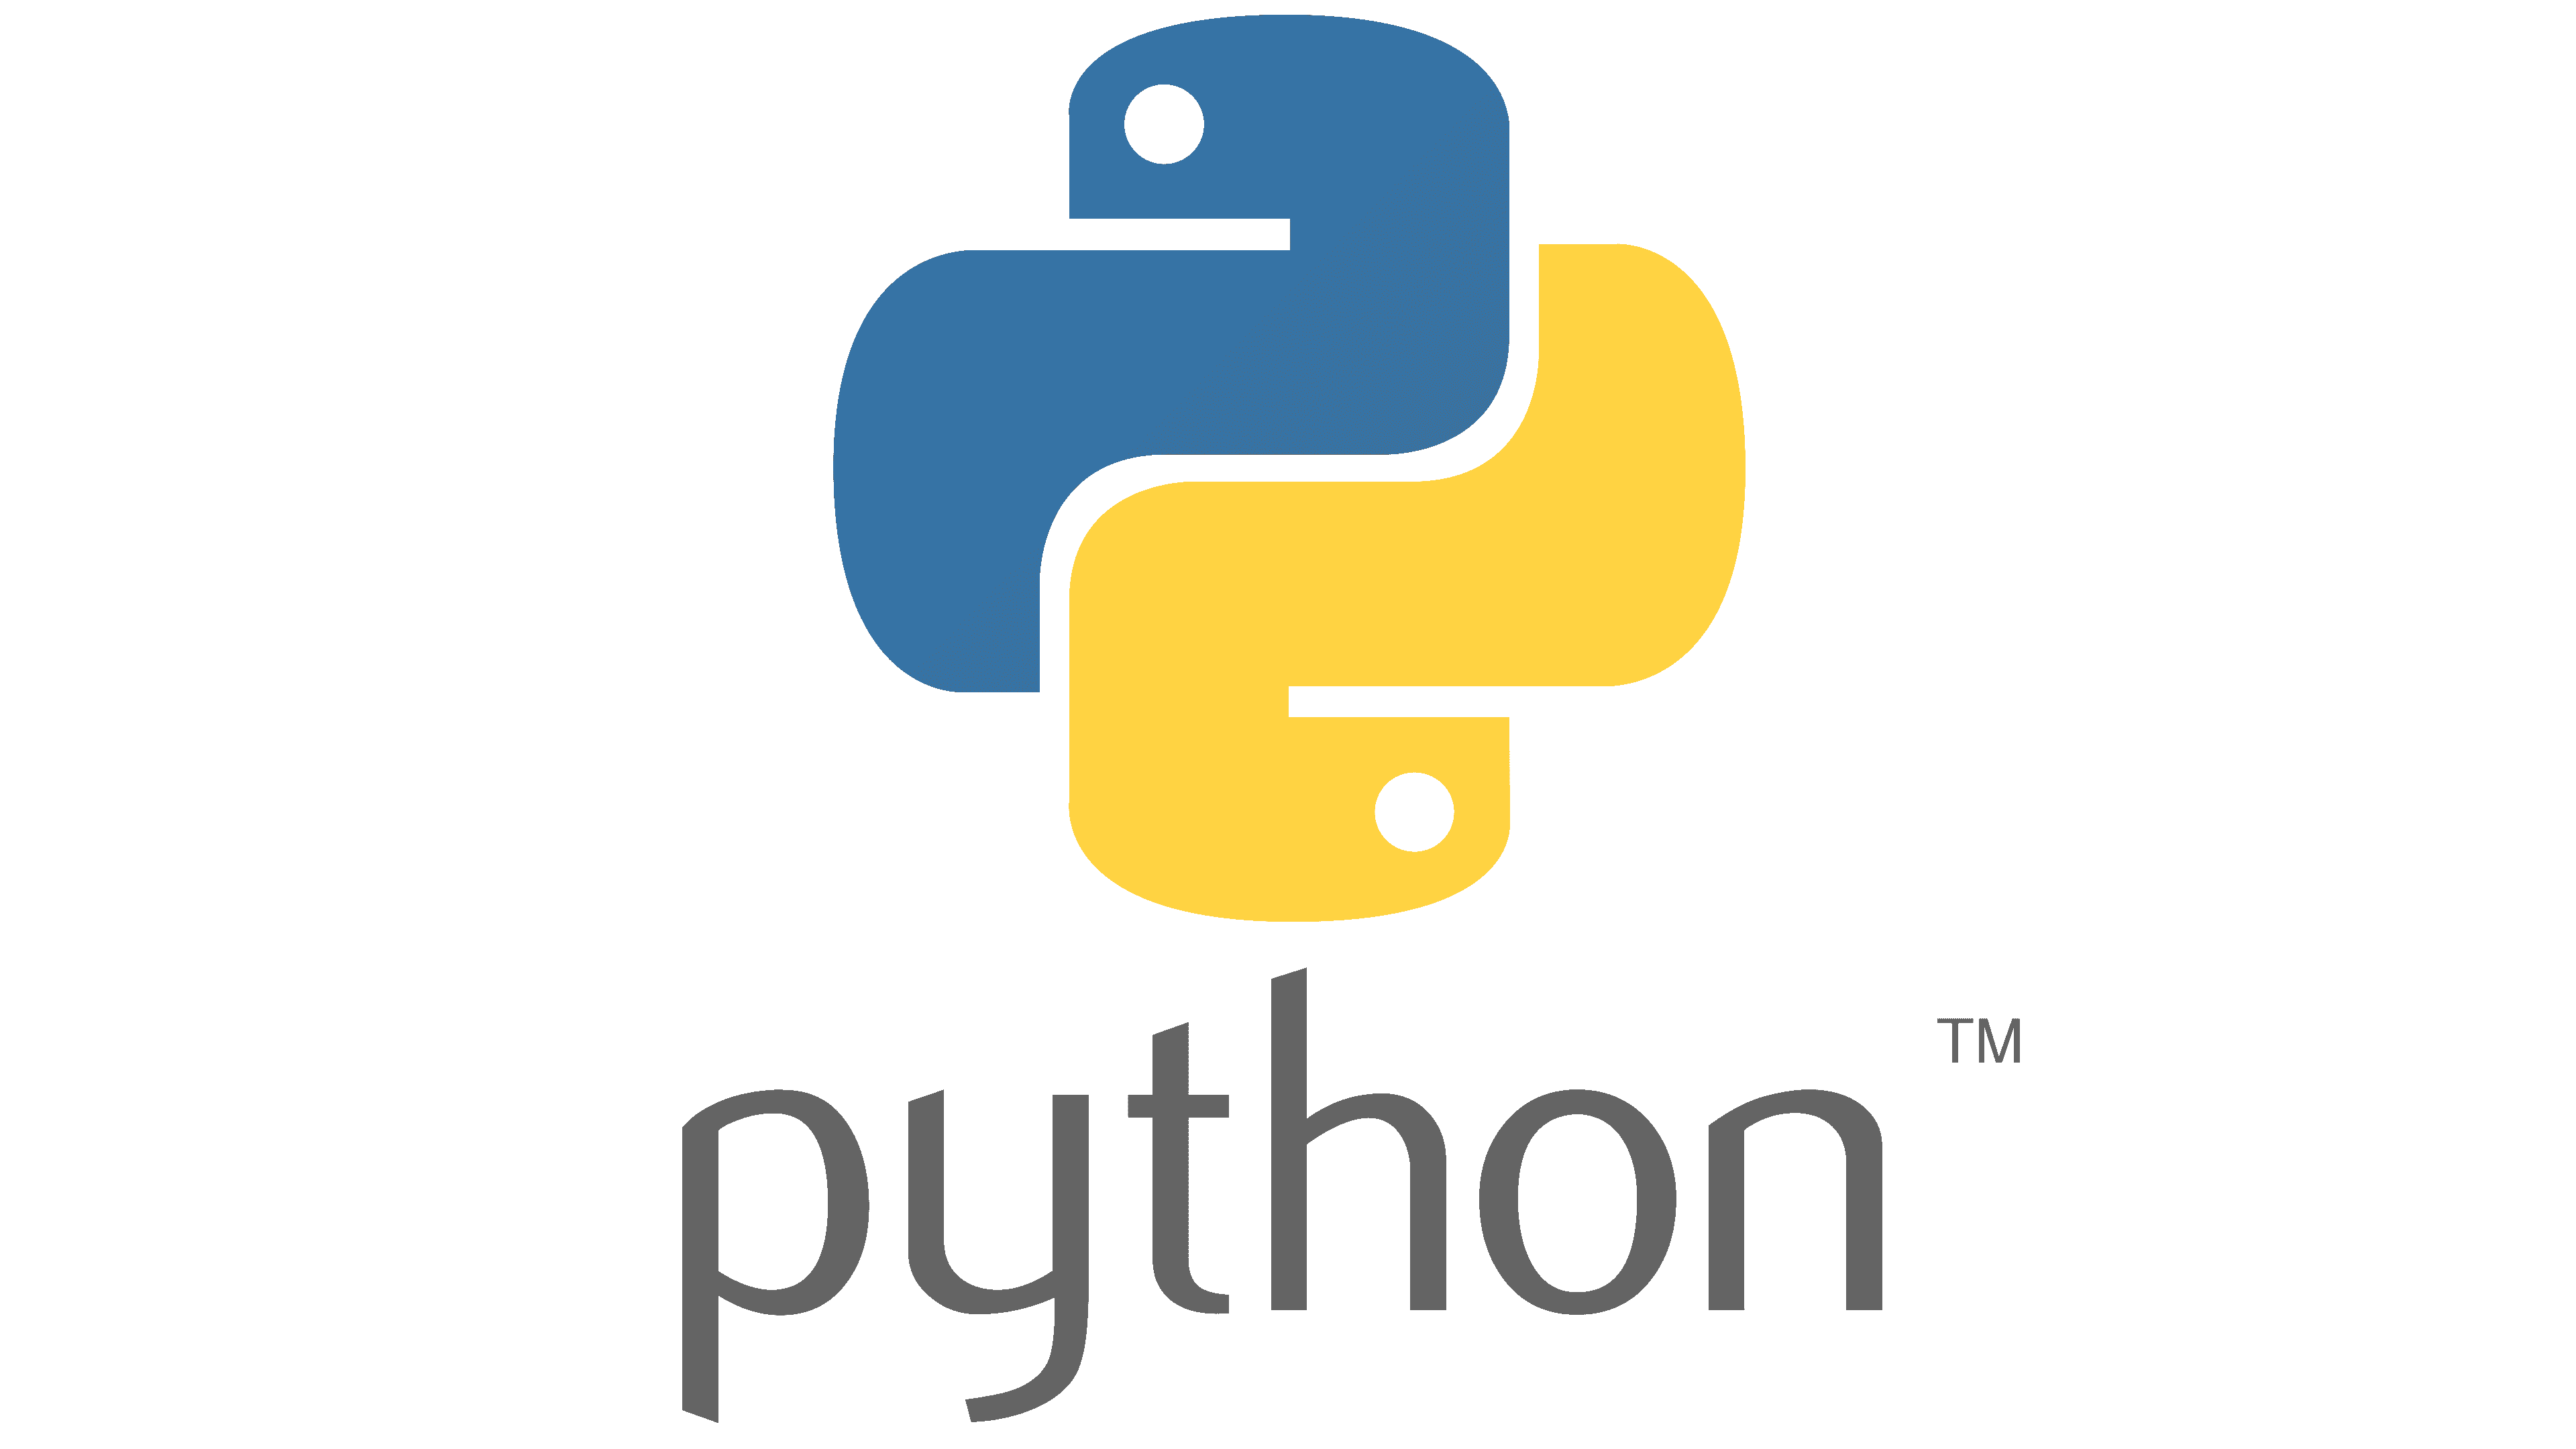 Programming essentials in python